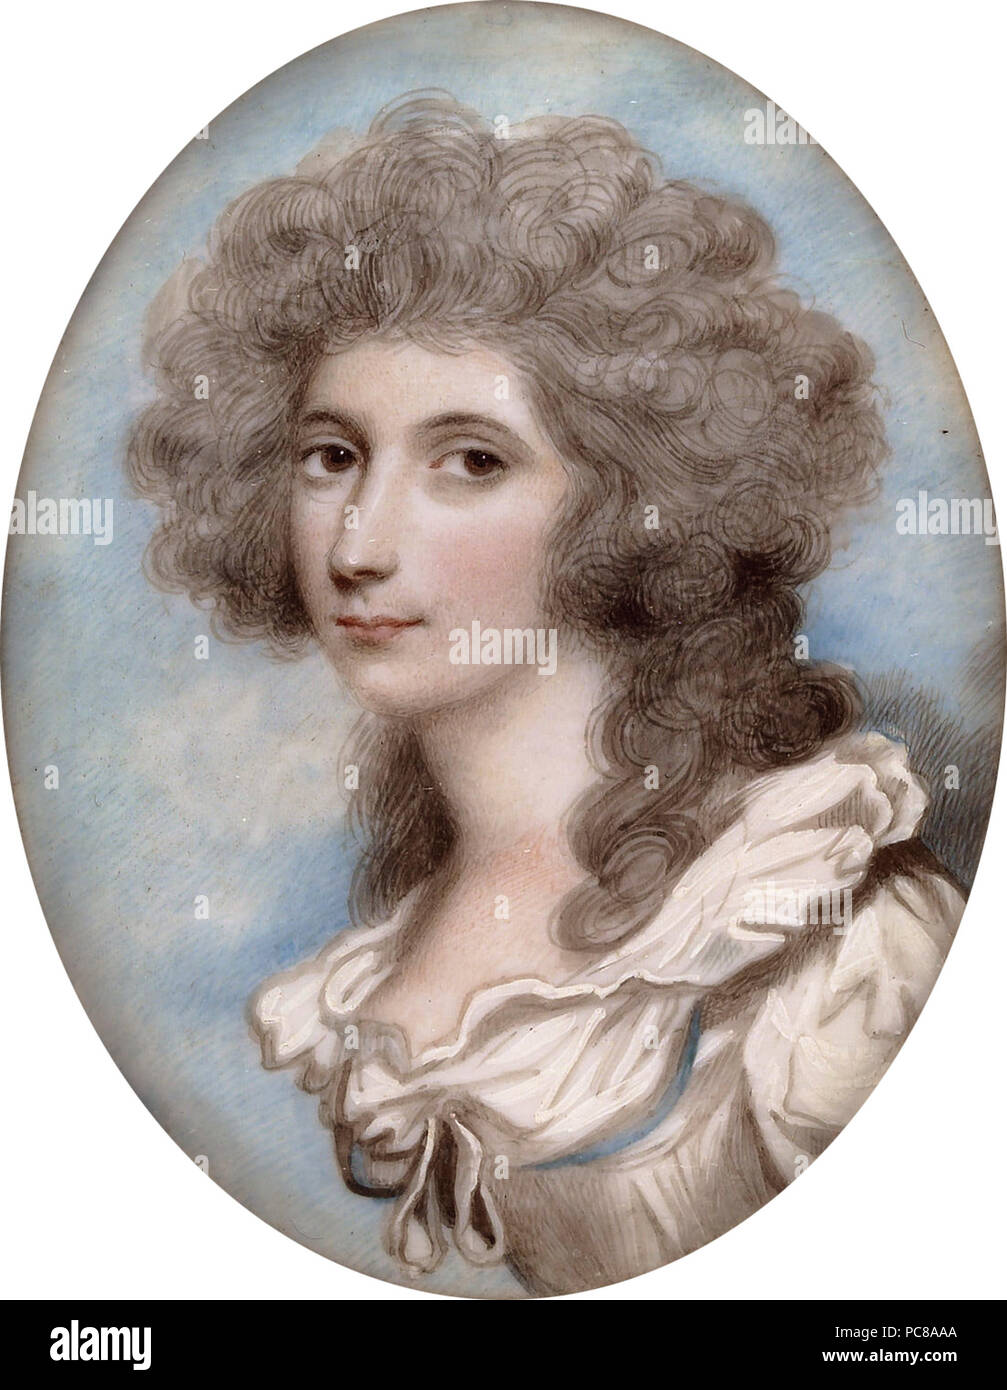 Caroline Price (1755-1826)  *oval, 6.4 cm high 115 Caroline Price (1755-1826), by Andrew Plimer (1763-1837) Stock Photo